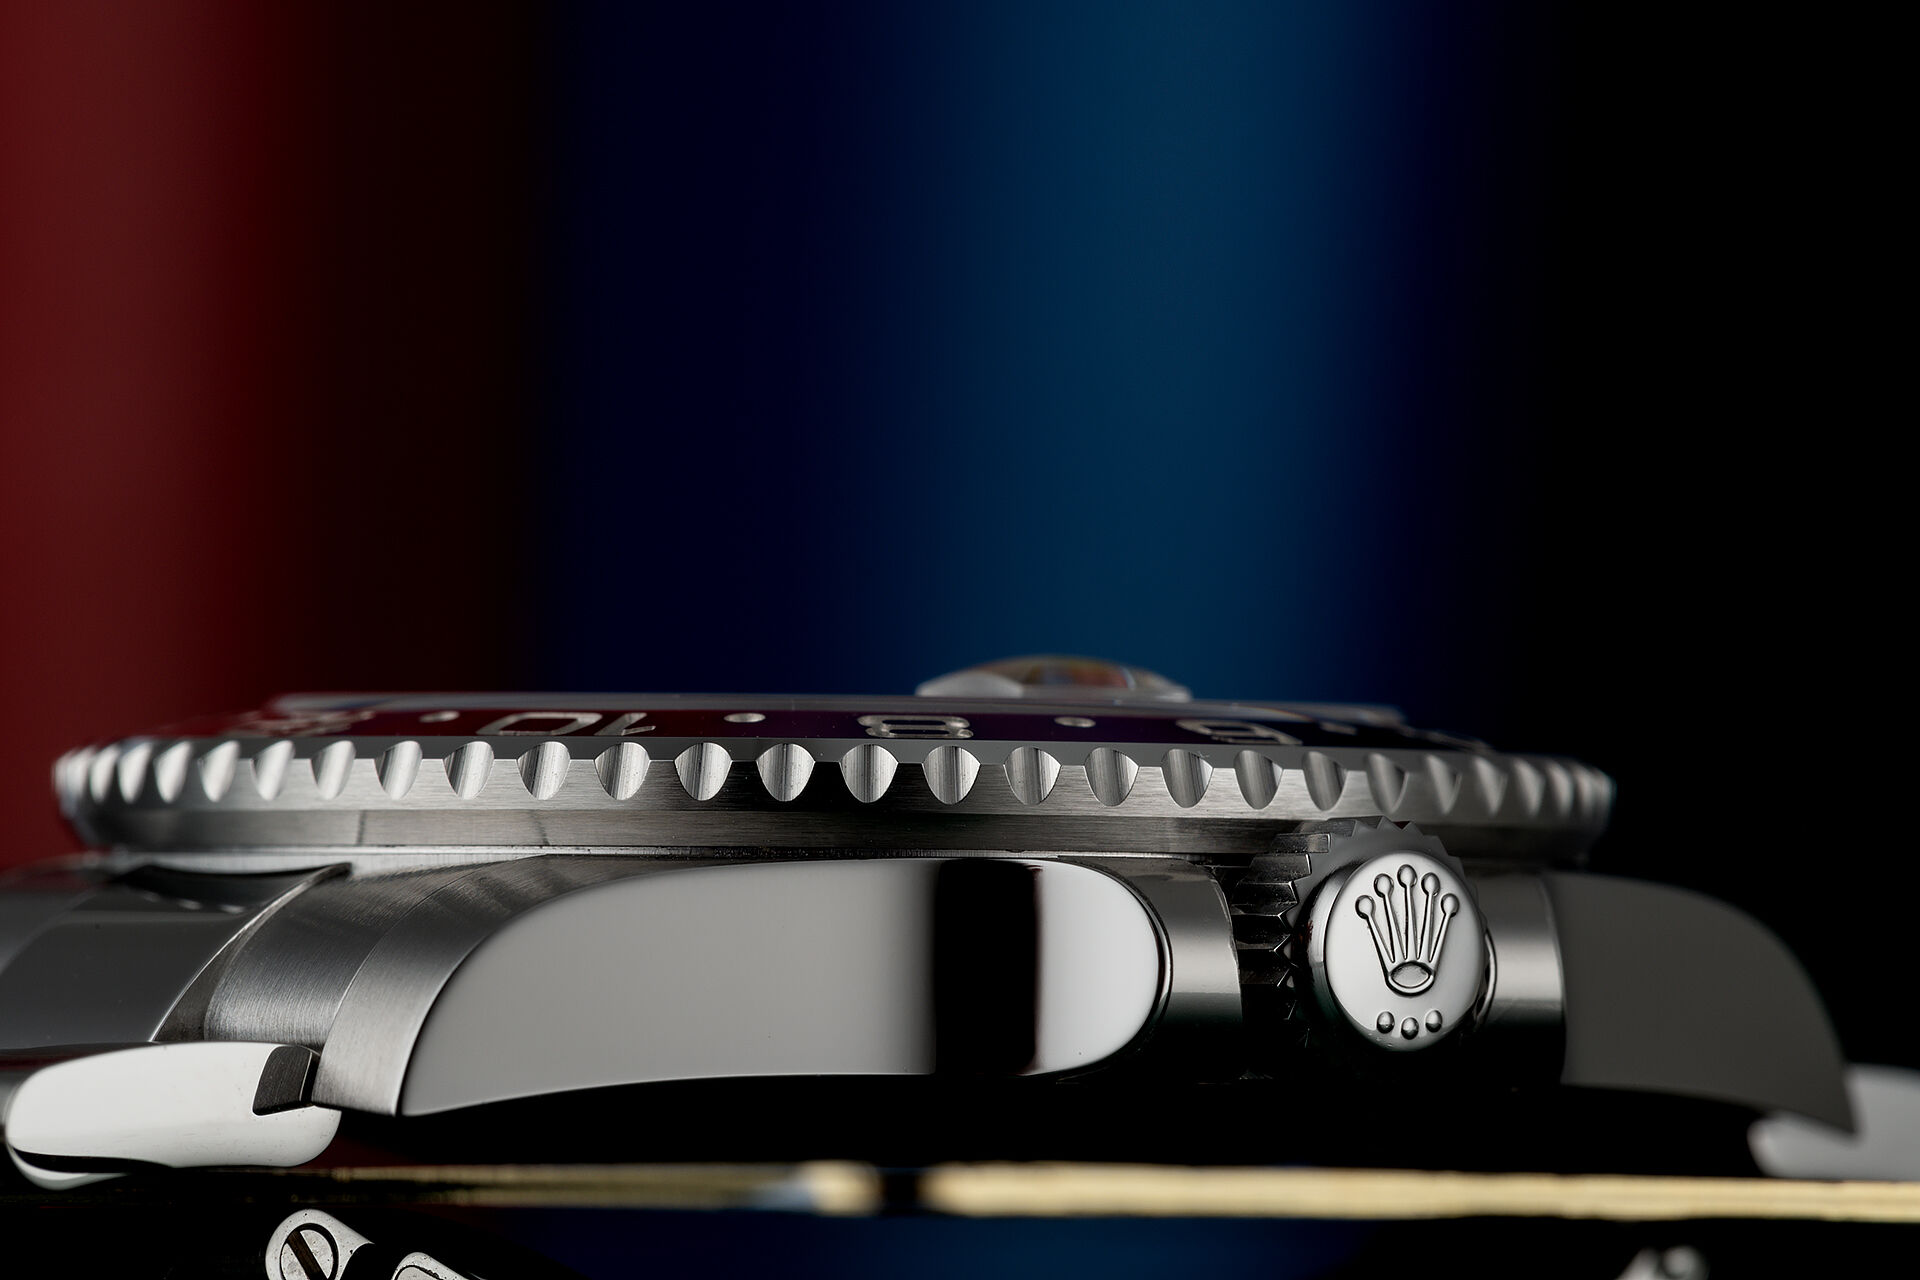 ref 126710BLRO | Rolex Warranty to 2026 | Rolex GMT-Master II